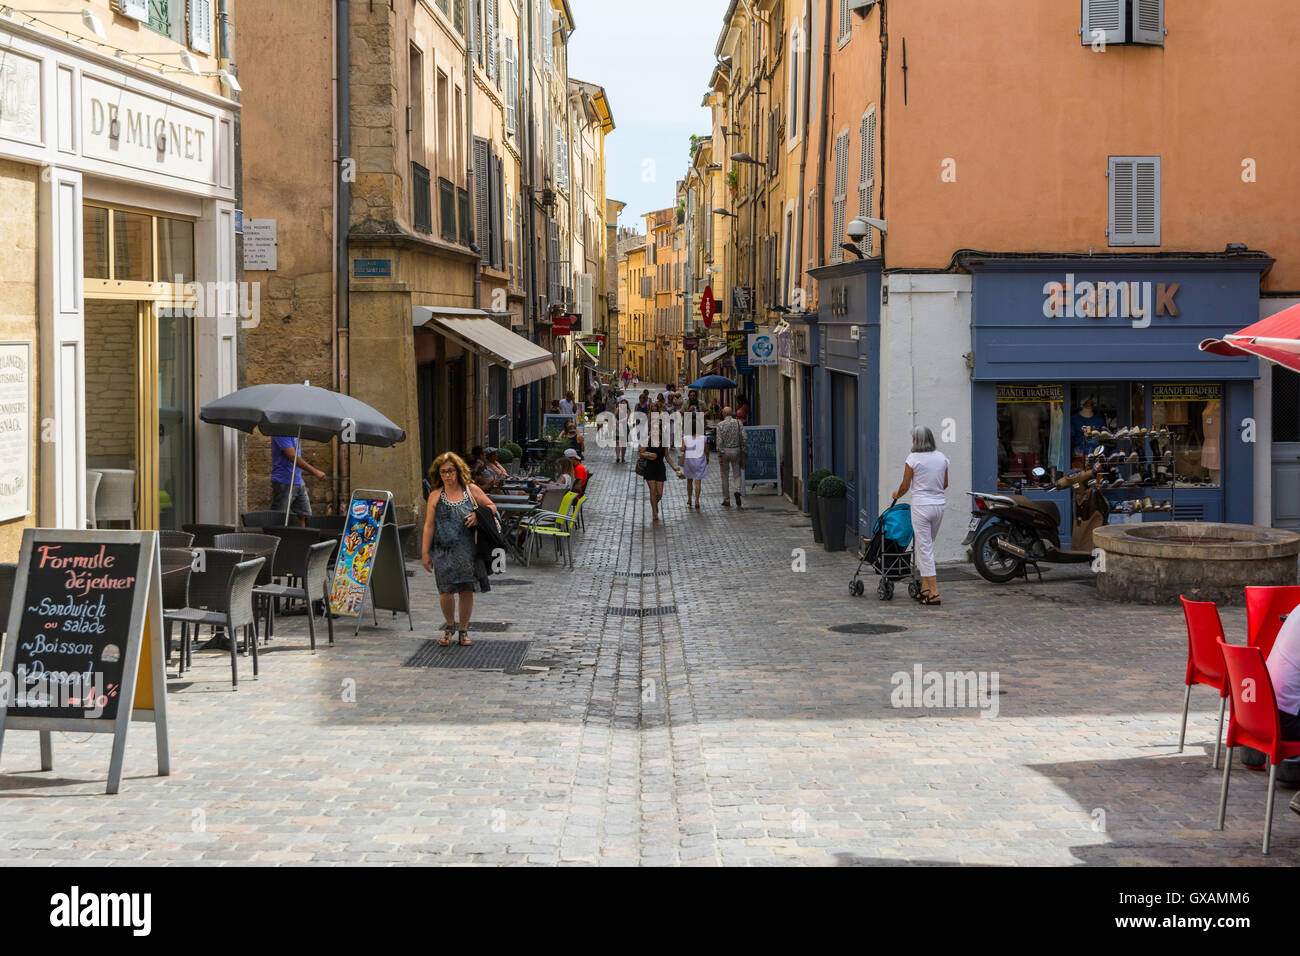 Aix en provence,France-August 9,2016:persone passeggiare per le tipiche strade di Aix-en-Provence durante un giorno d'estate. Foto Stock